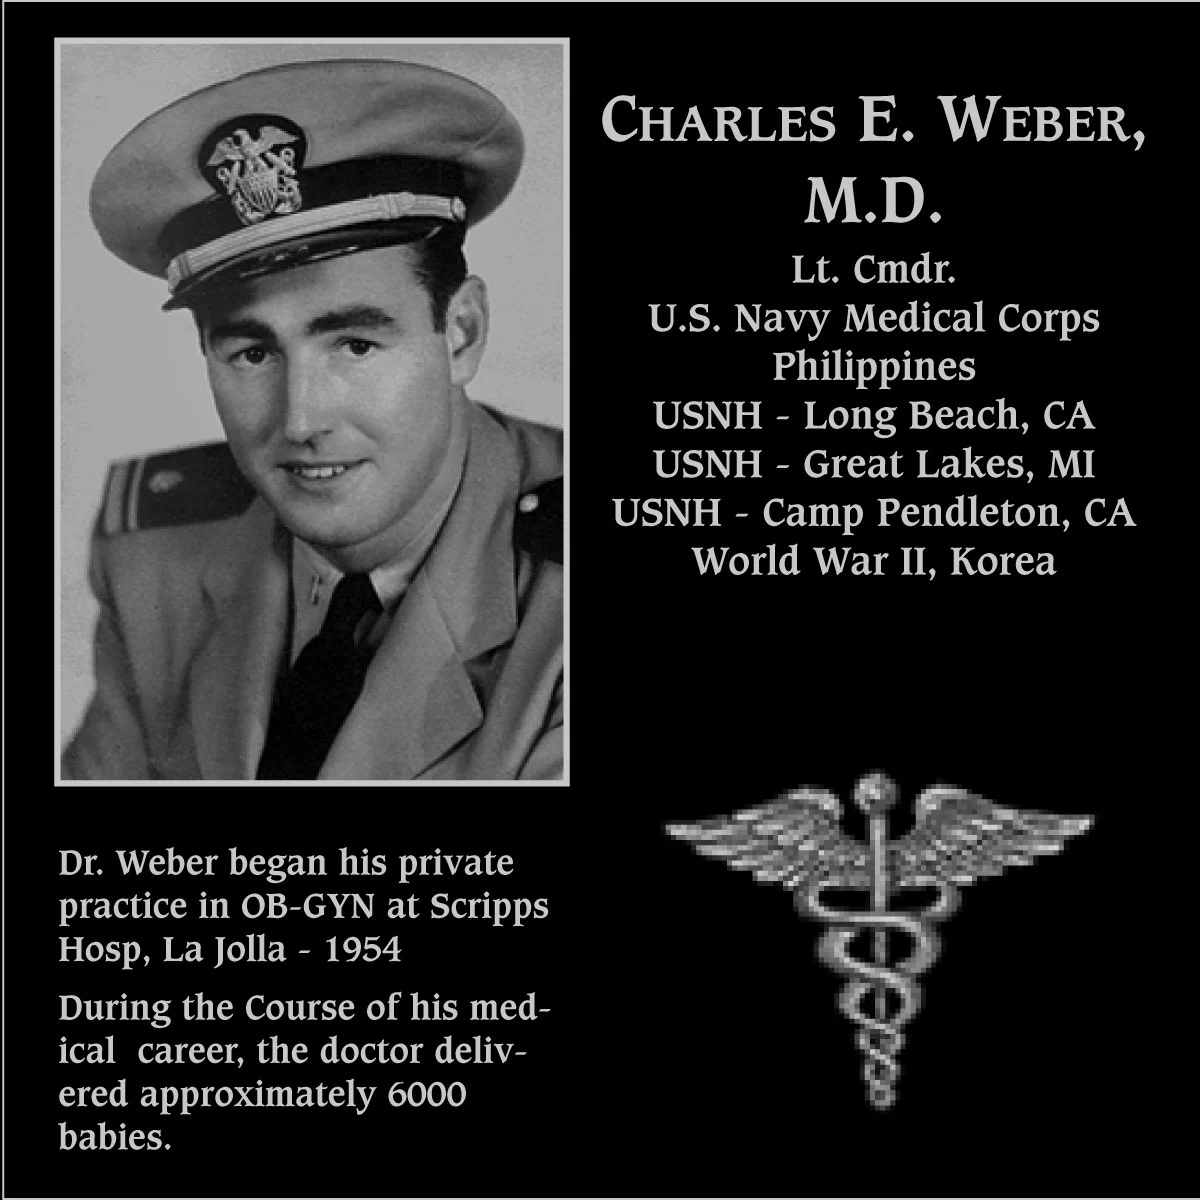 Charles E. Weber